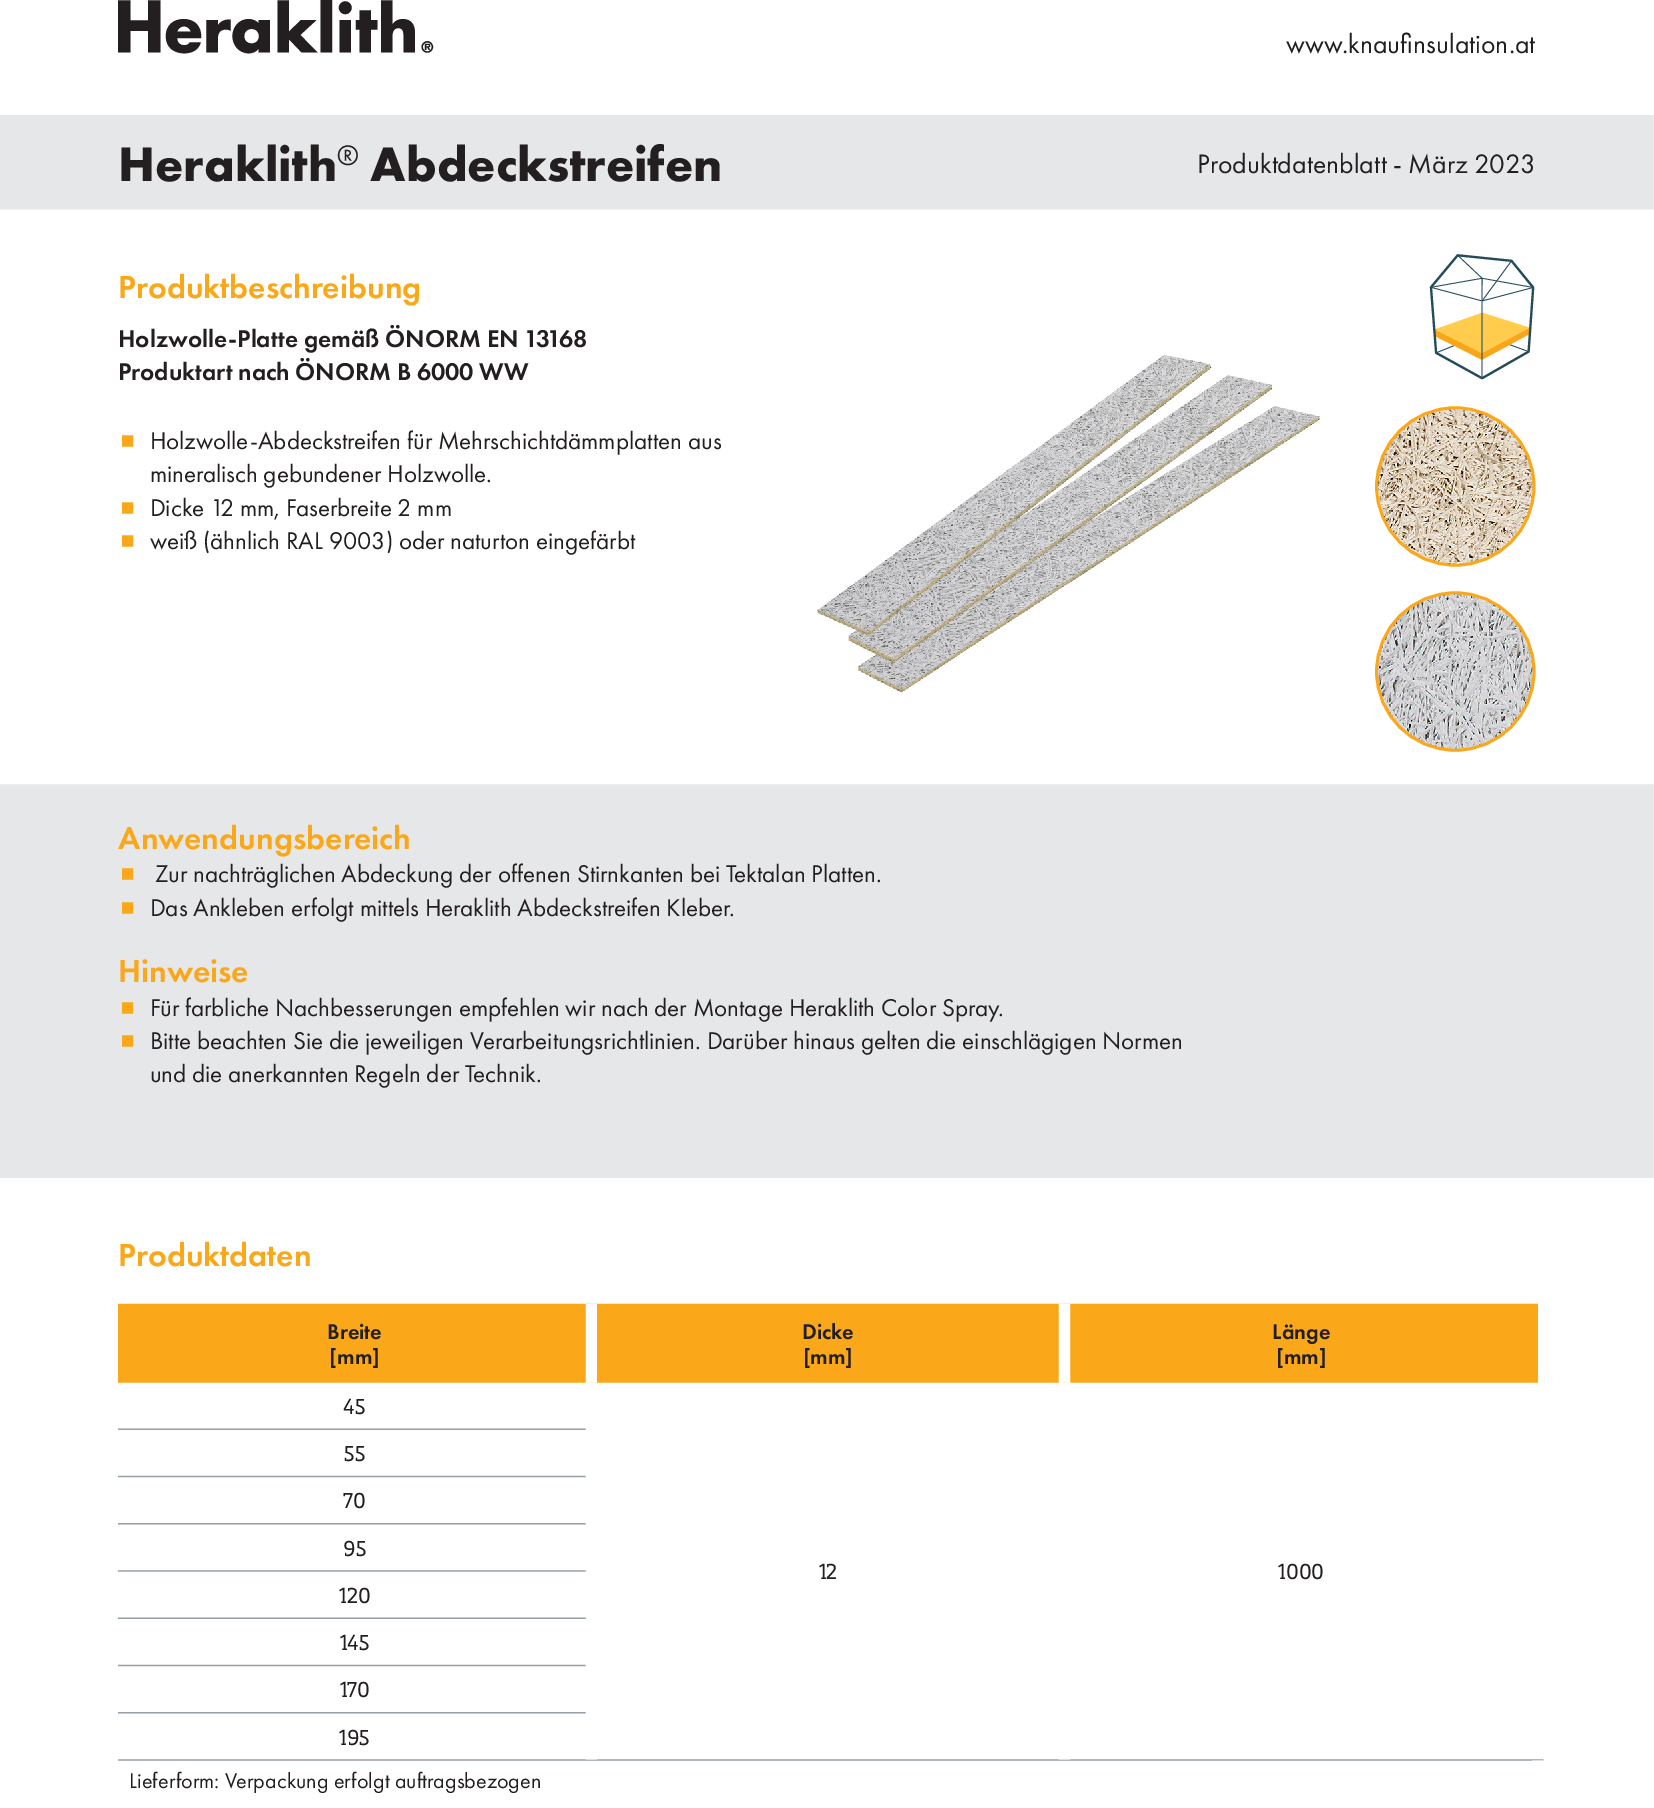 Heraklith Abdeckstreifen, Produktdatenblatt